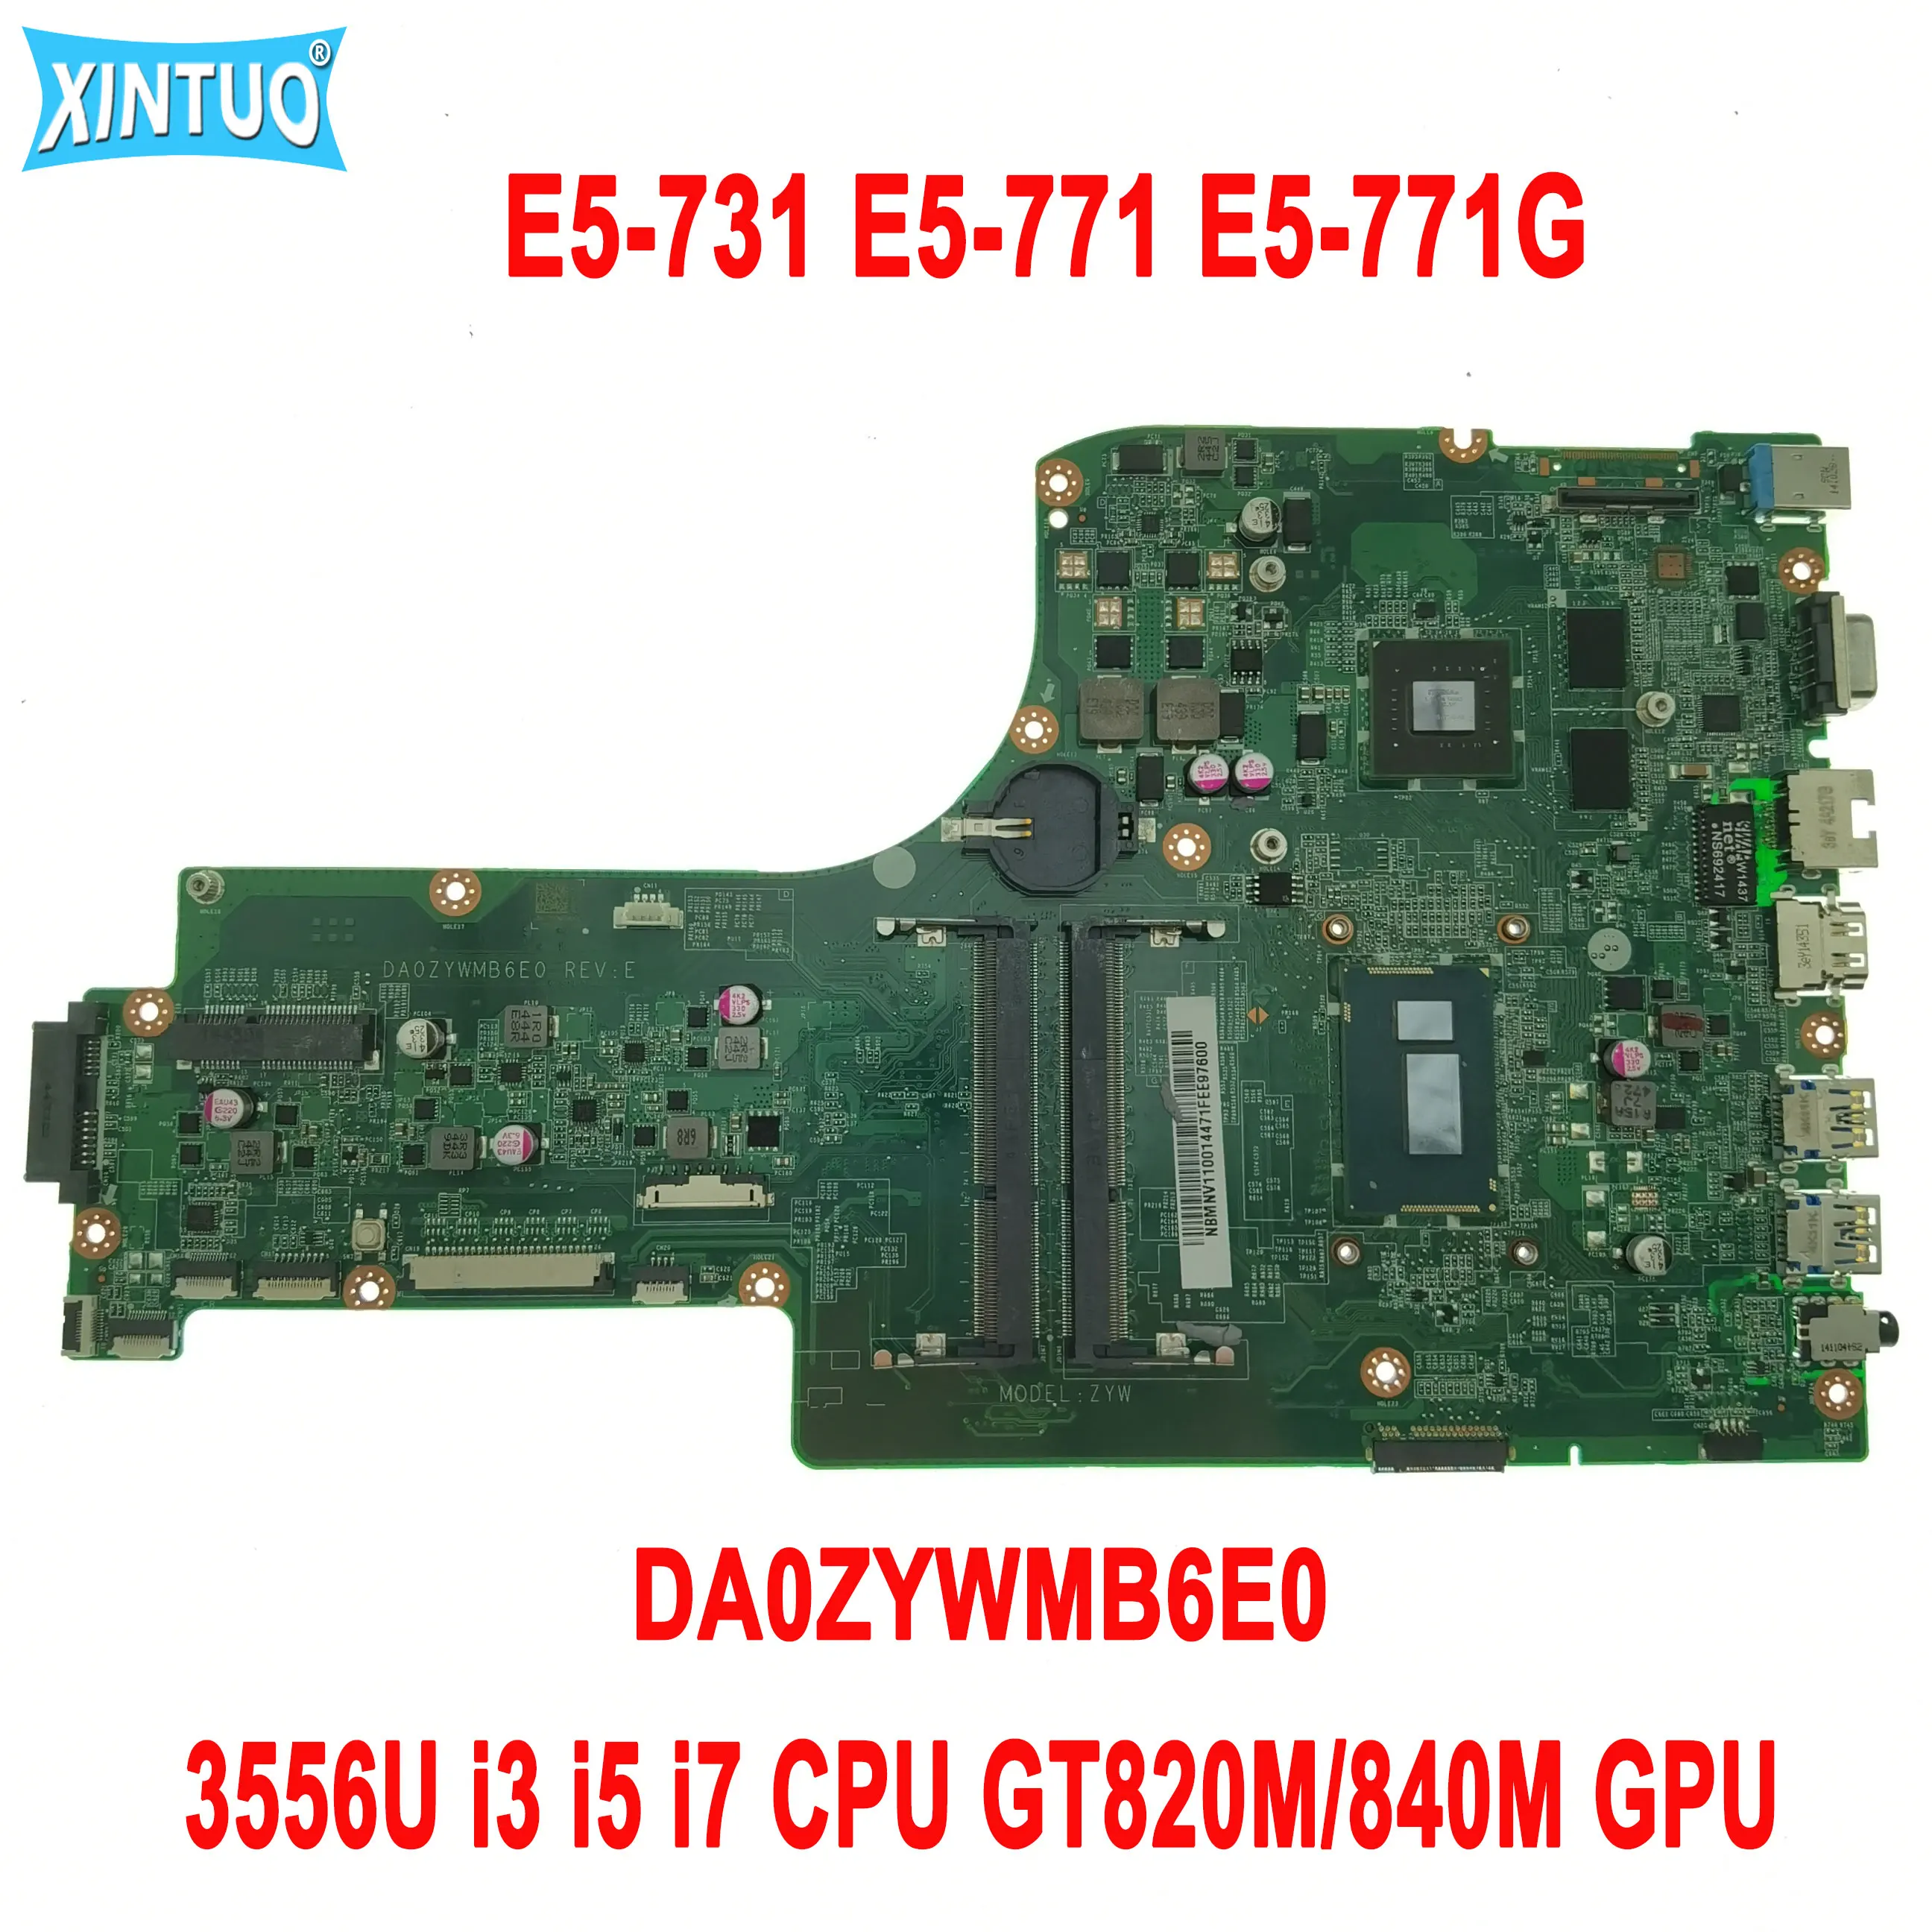   DA0ZYWMB6E0  Acer Aspire E5-731 E5-771,       3556U i3 i5 i7 GT820M/840M GPU DDR3